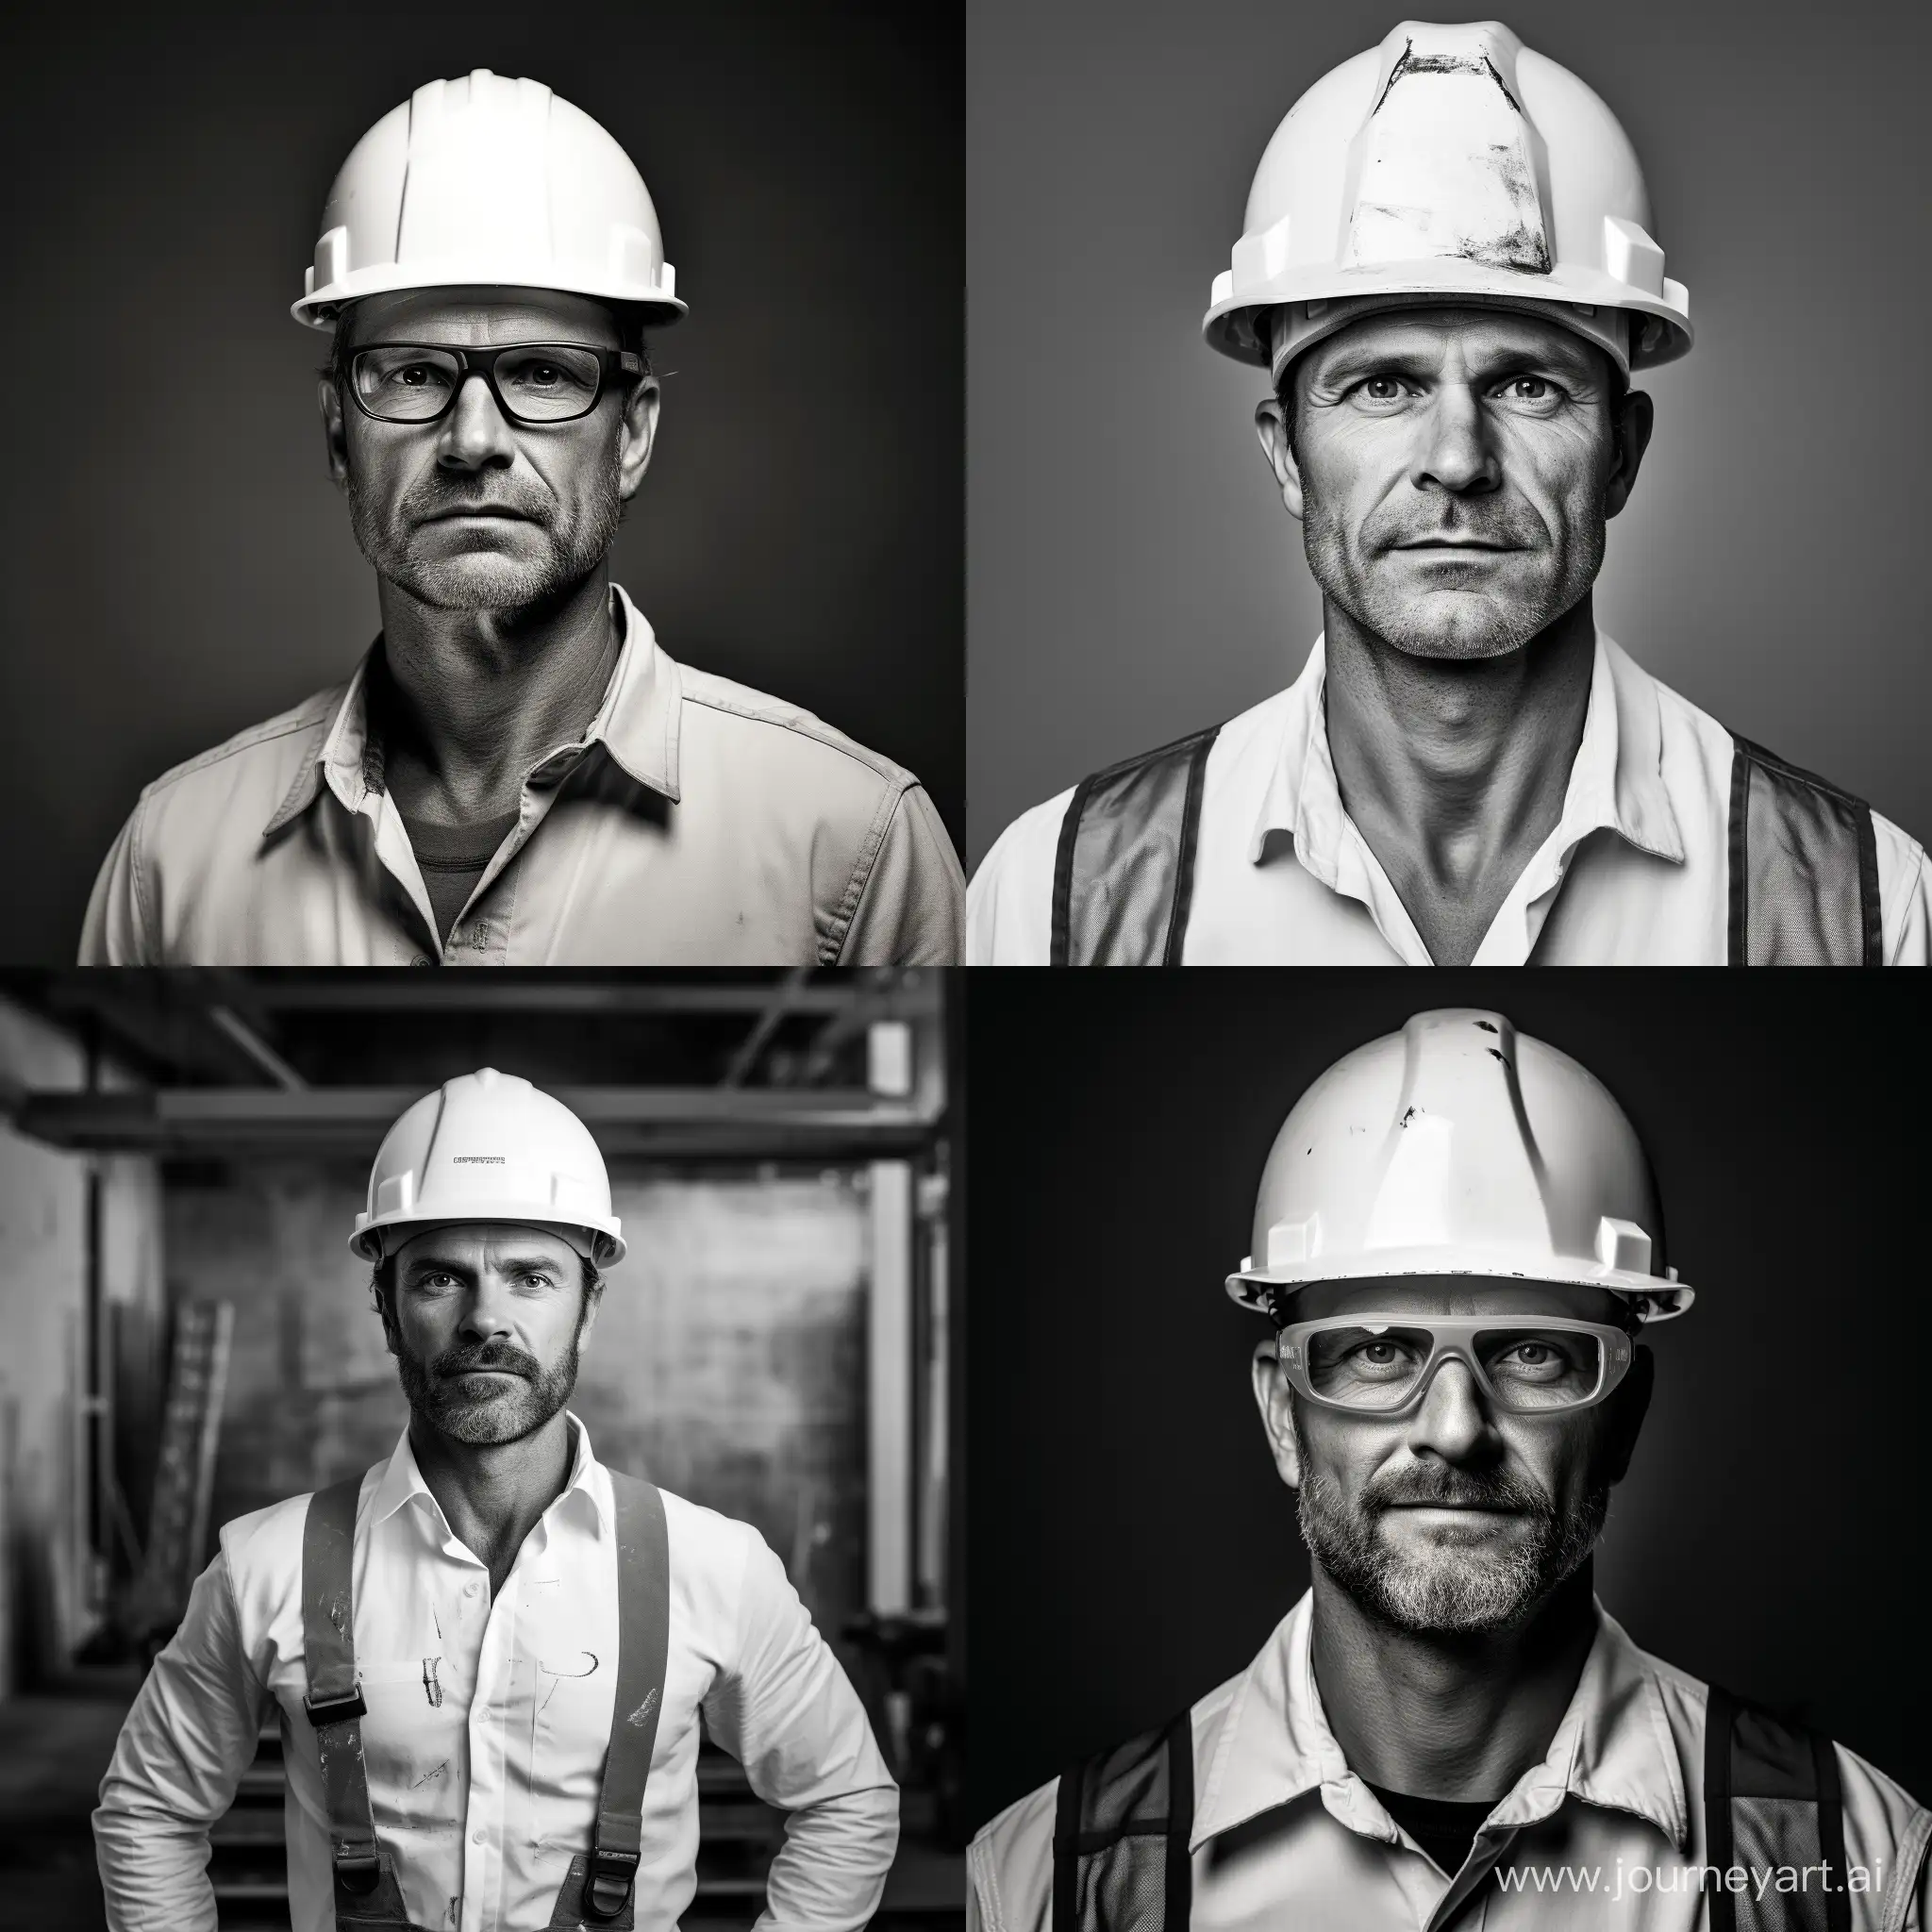 Сгенерируй черно-белую фотографию опытного инженера строителя в белой рубашке  и в белой каске. внешность должна внушать доверие опыту и профессионализму. Внешность европейца